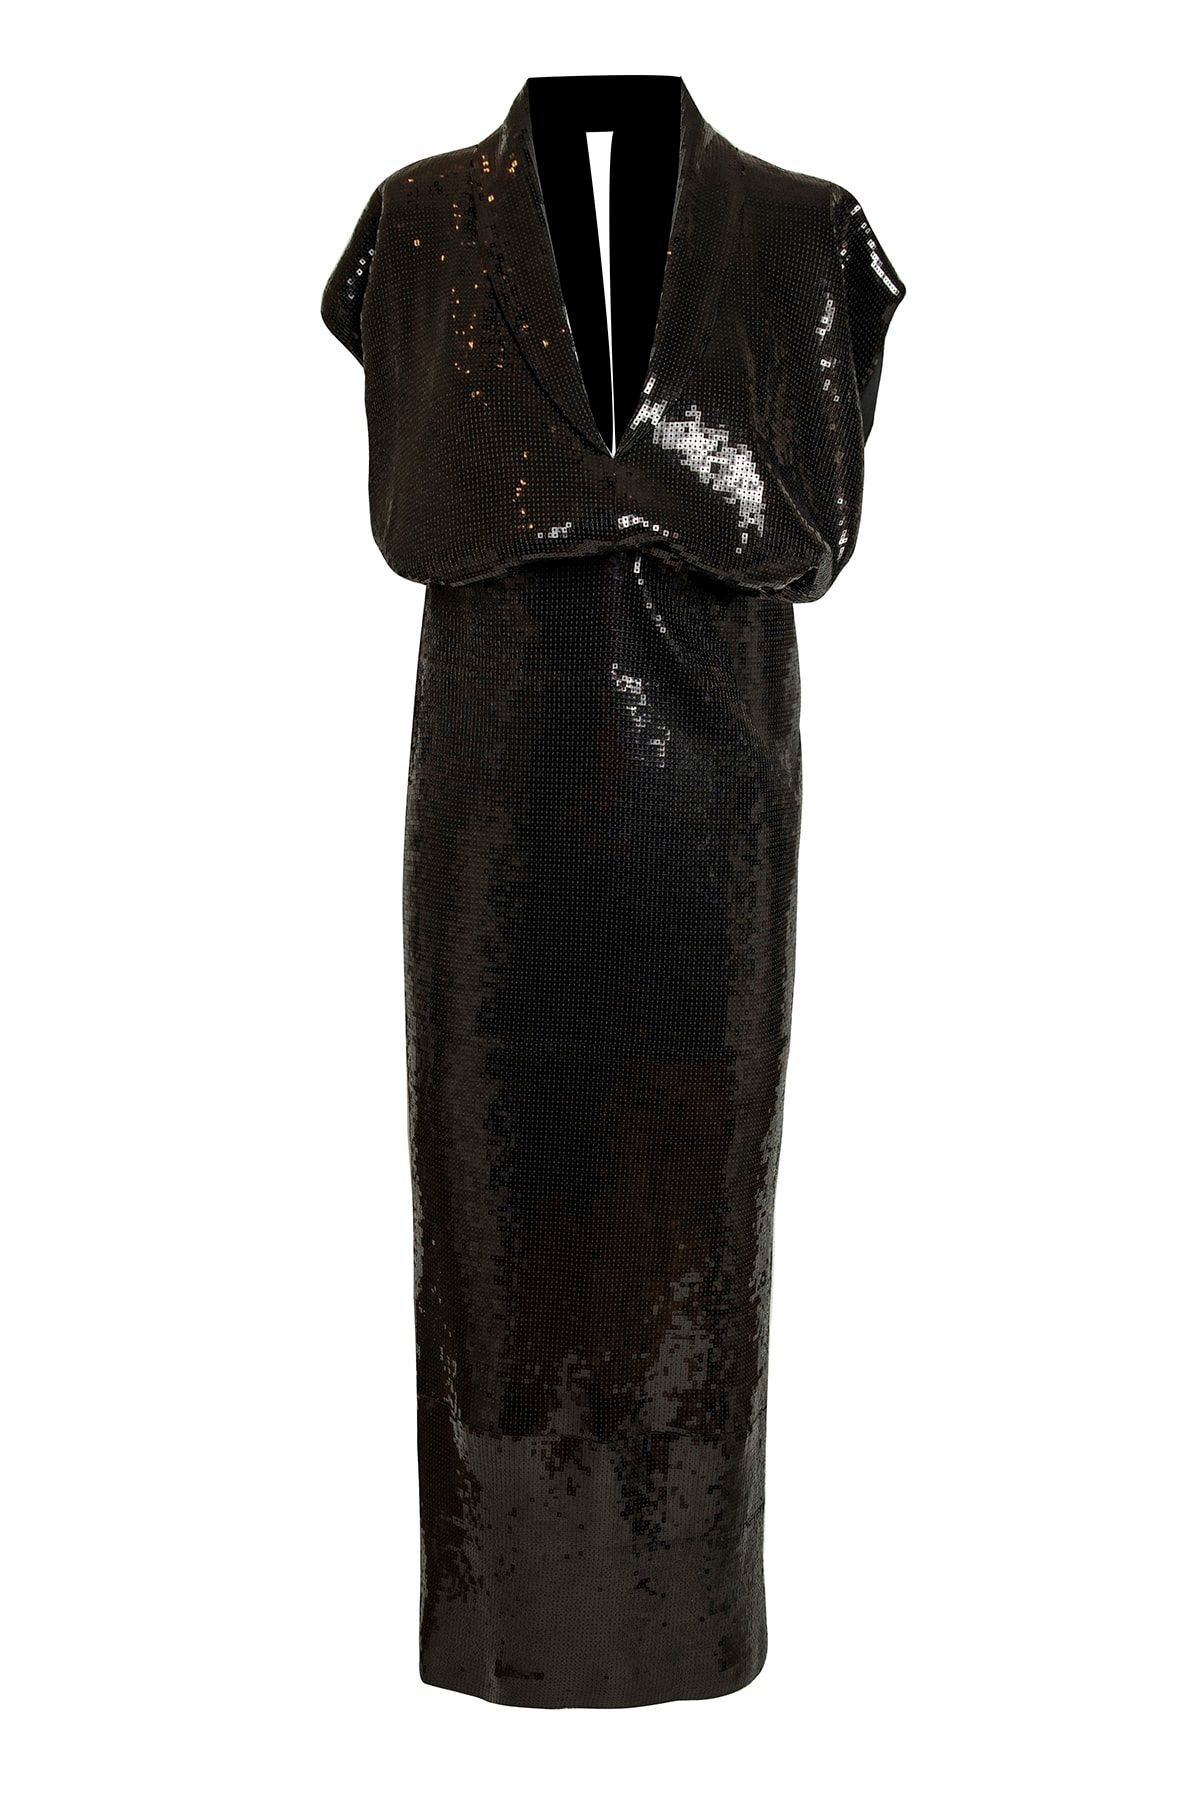 Barrus Kadın Siyah Harbor Payet Dökümlü Elbise BARRUS702